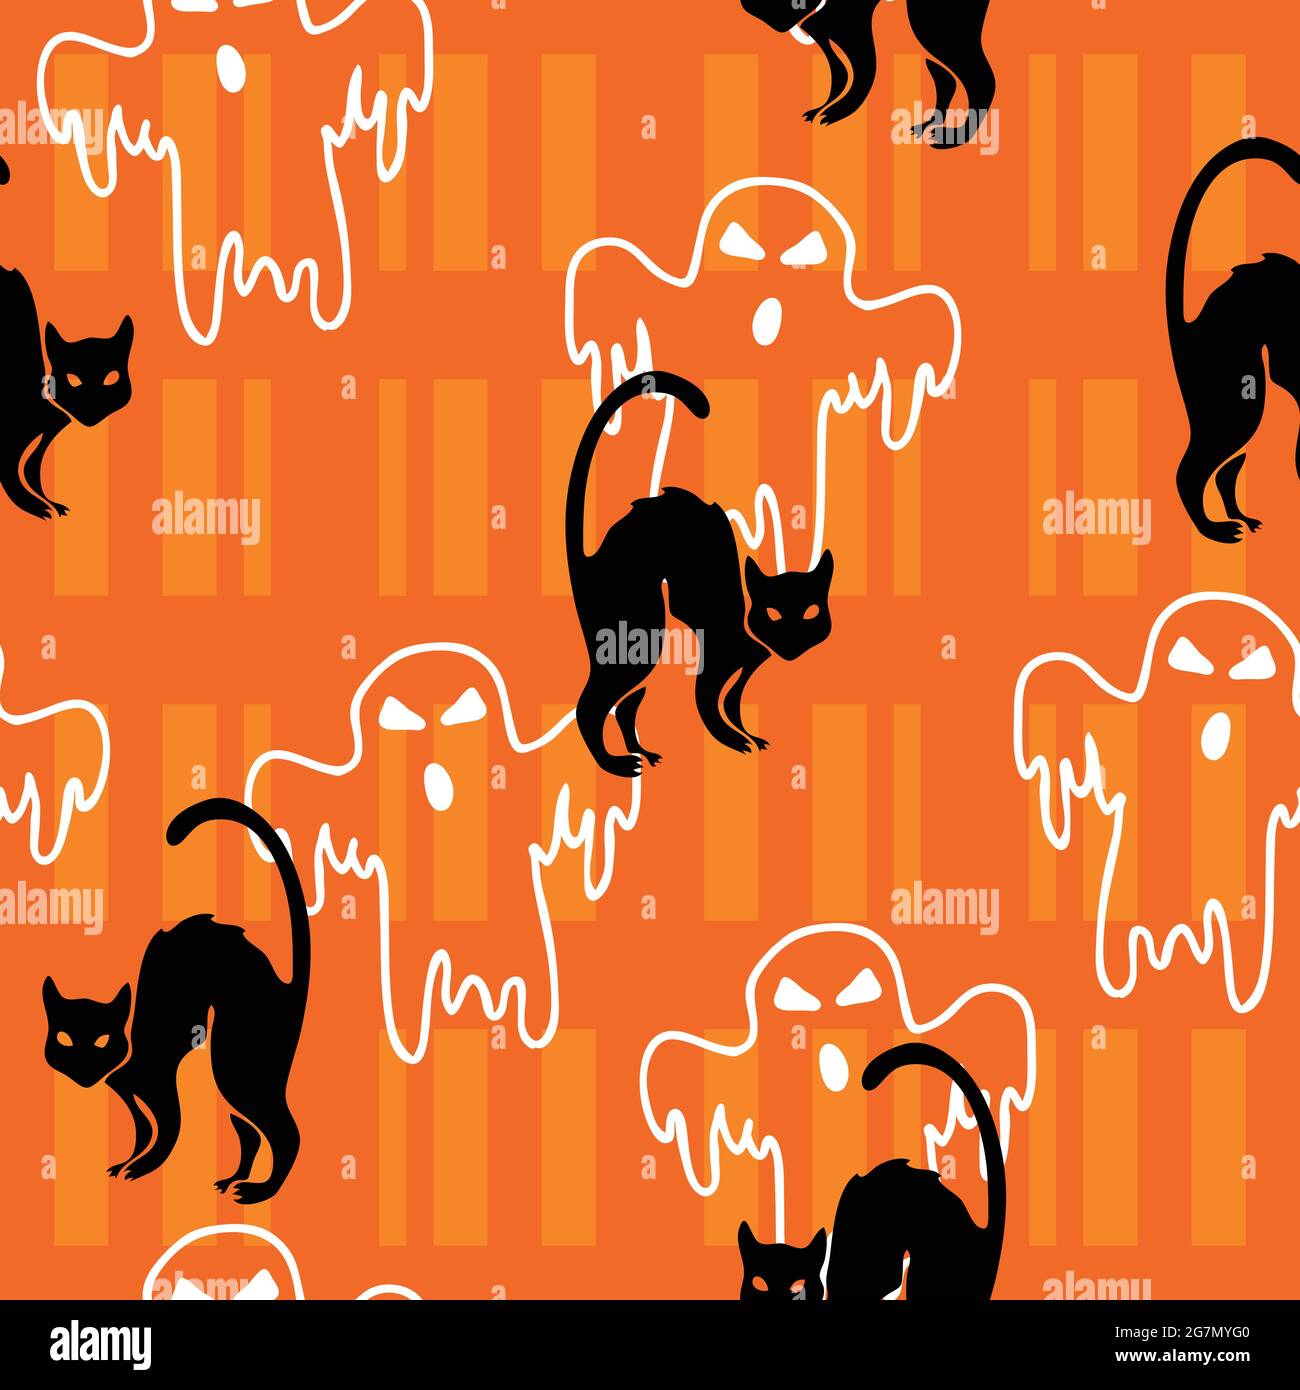 114368 Black Cat Halloween Images Stock Photos  Vectors  Shutterstock